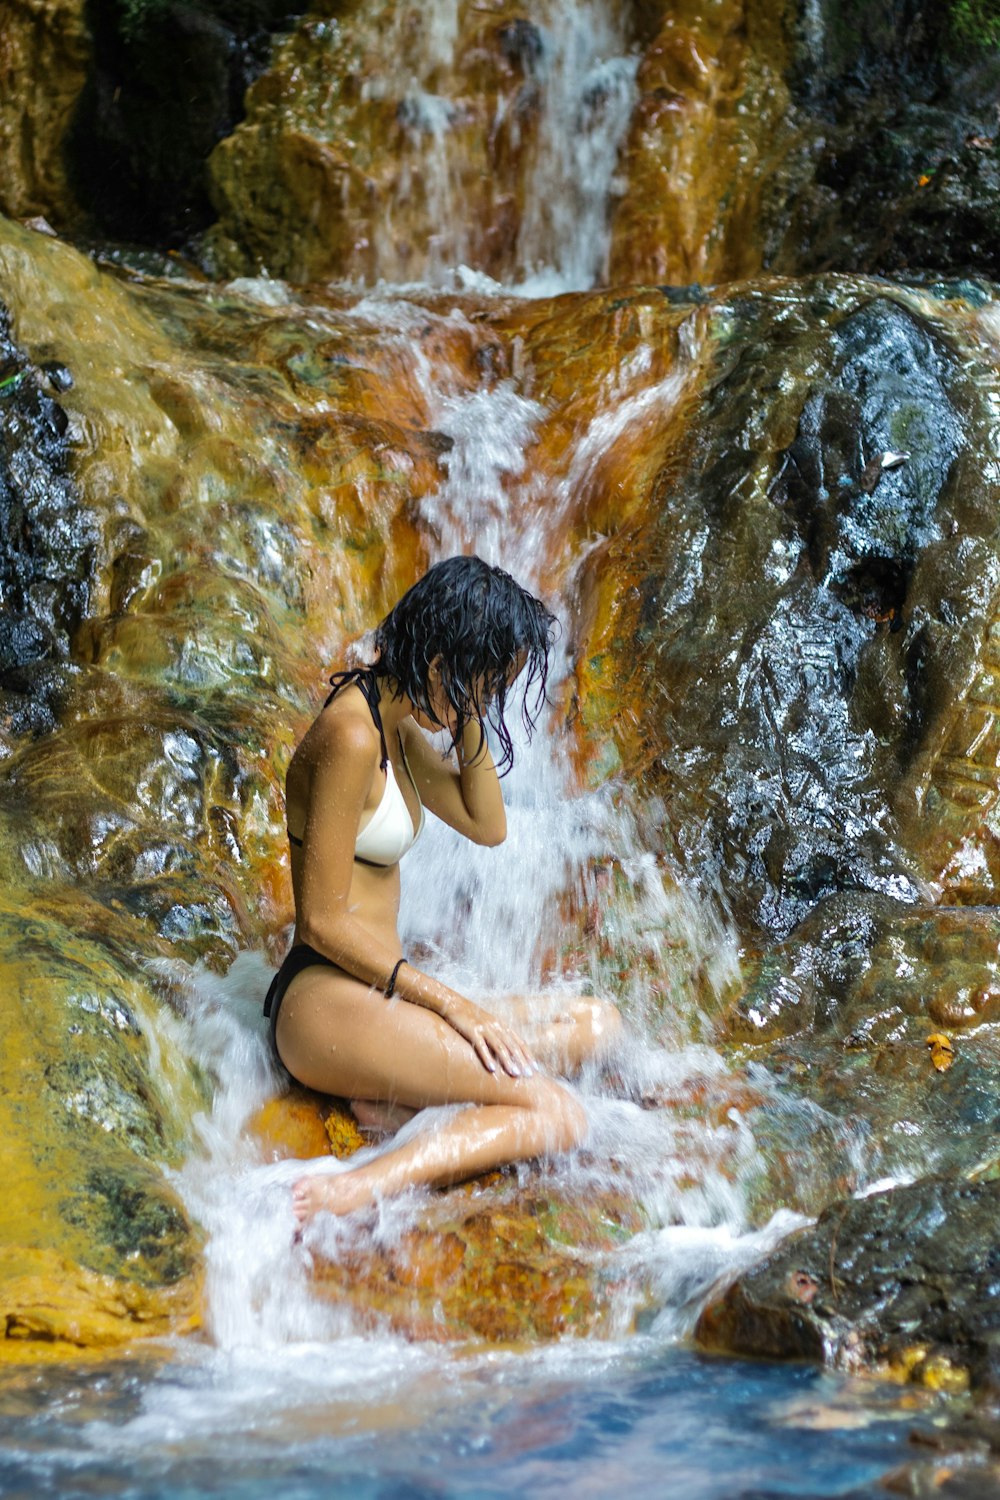 Eine Frau im Bikini sitzt auf einem Felsen neben einem Wasserfall